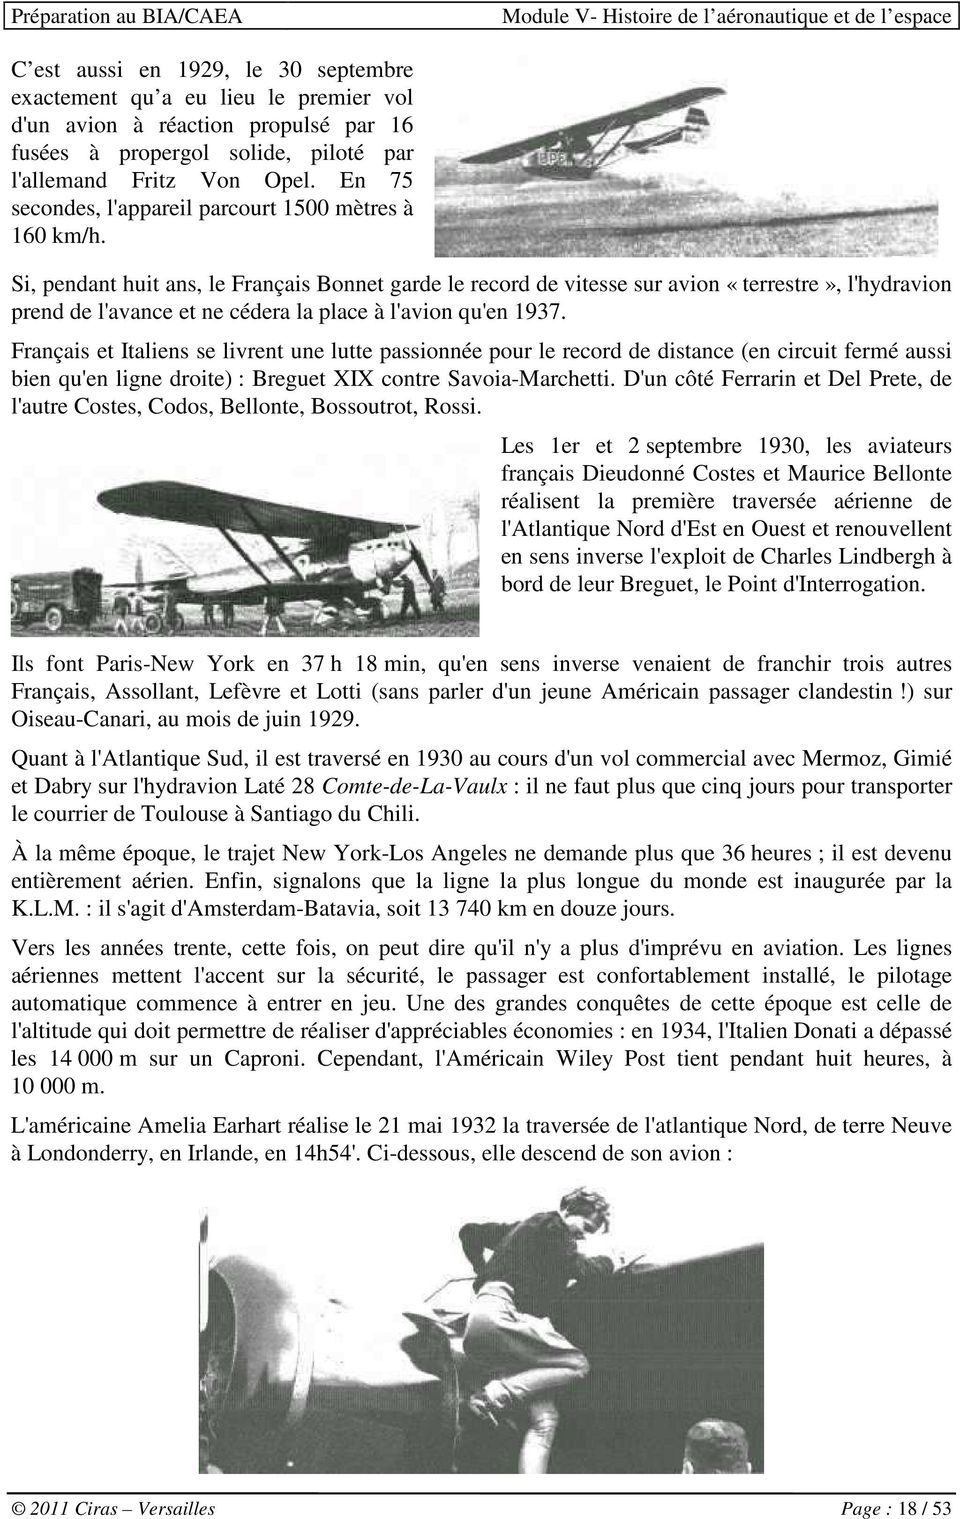 Si, pendant huit ans, le Français Bonnet garde le record de vitesse sur avion «terrestre», l'hydravion prend de l'avance et ne cédera la place à l'avion qu'en 1937.